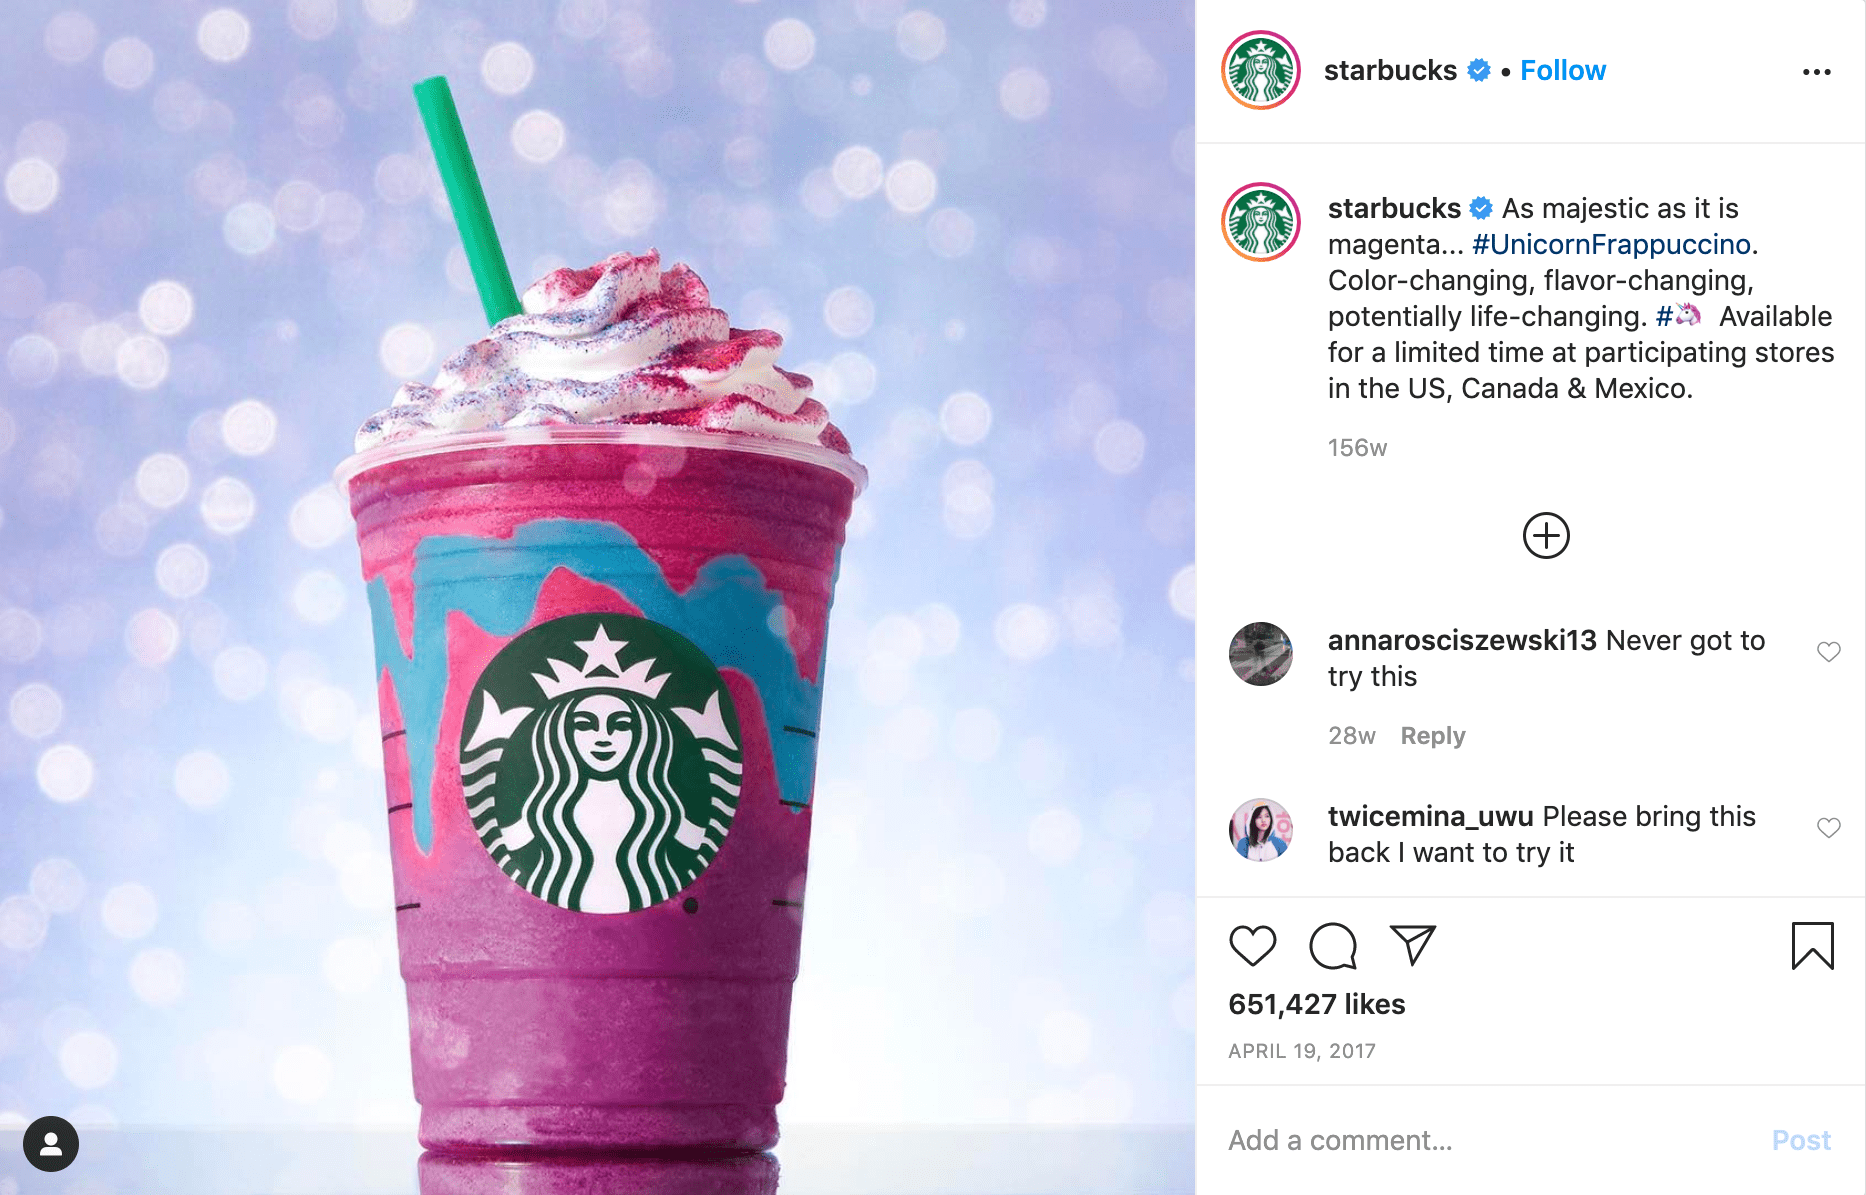 Starbucks Unicorn frappuccino campaign